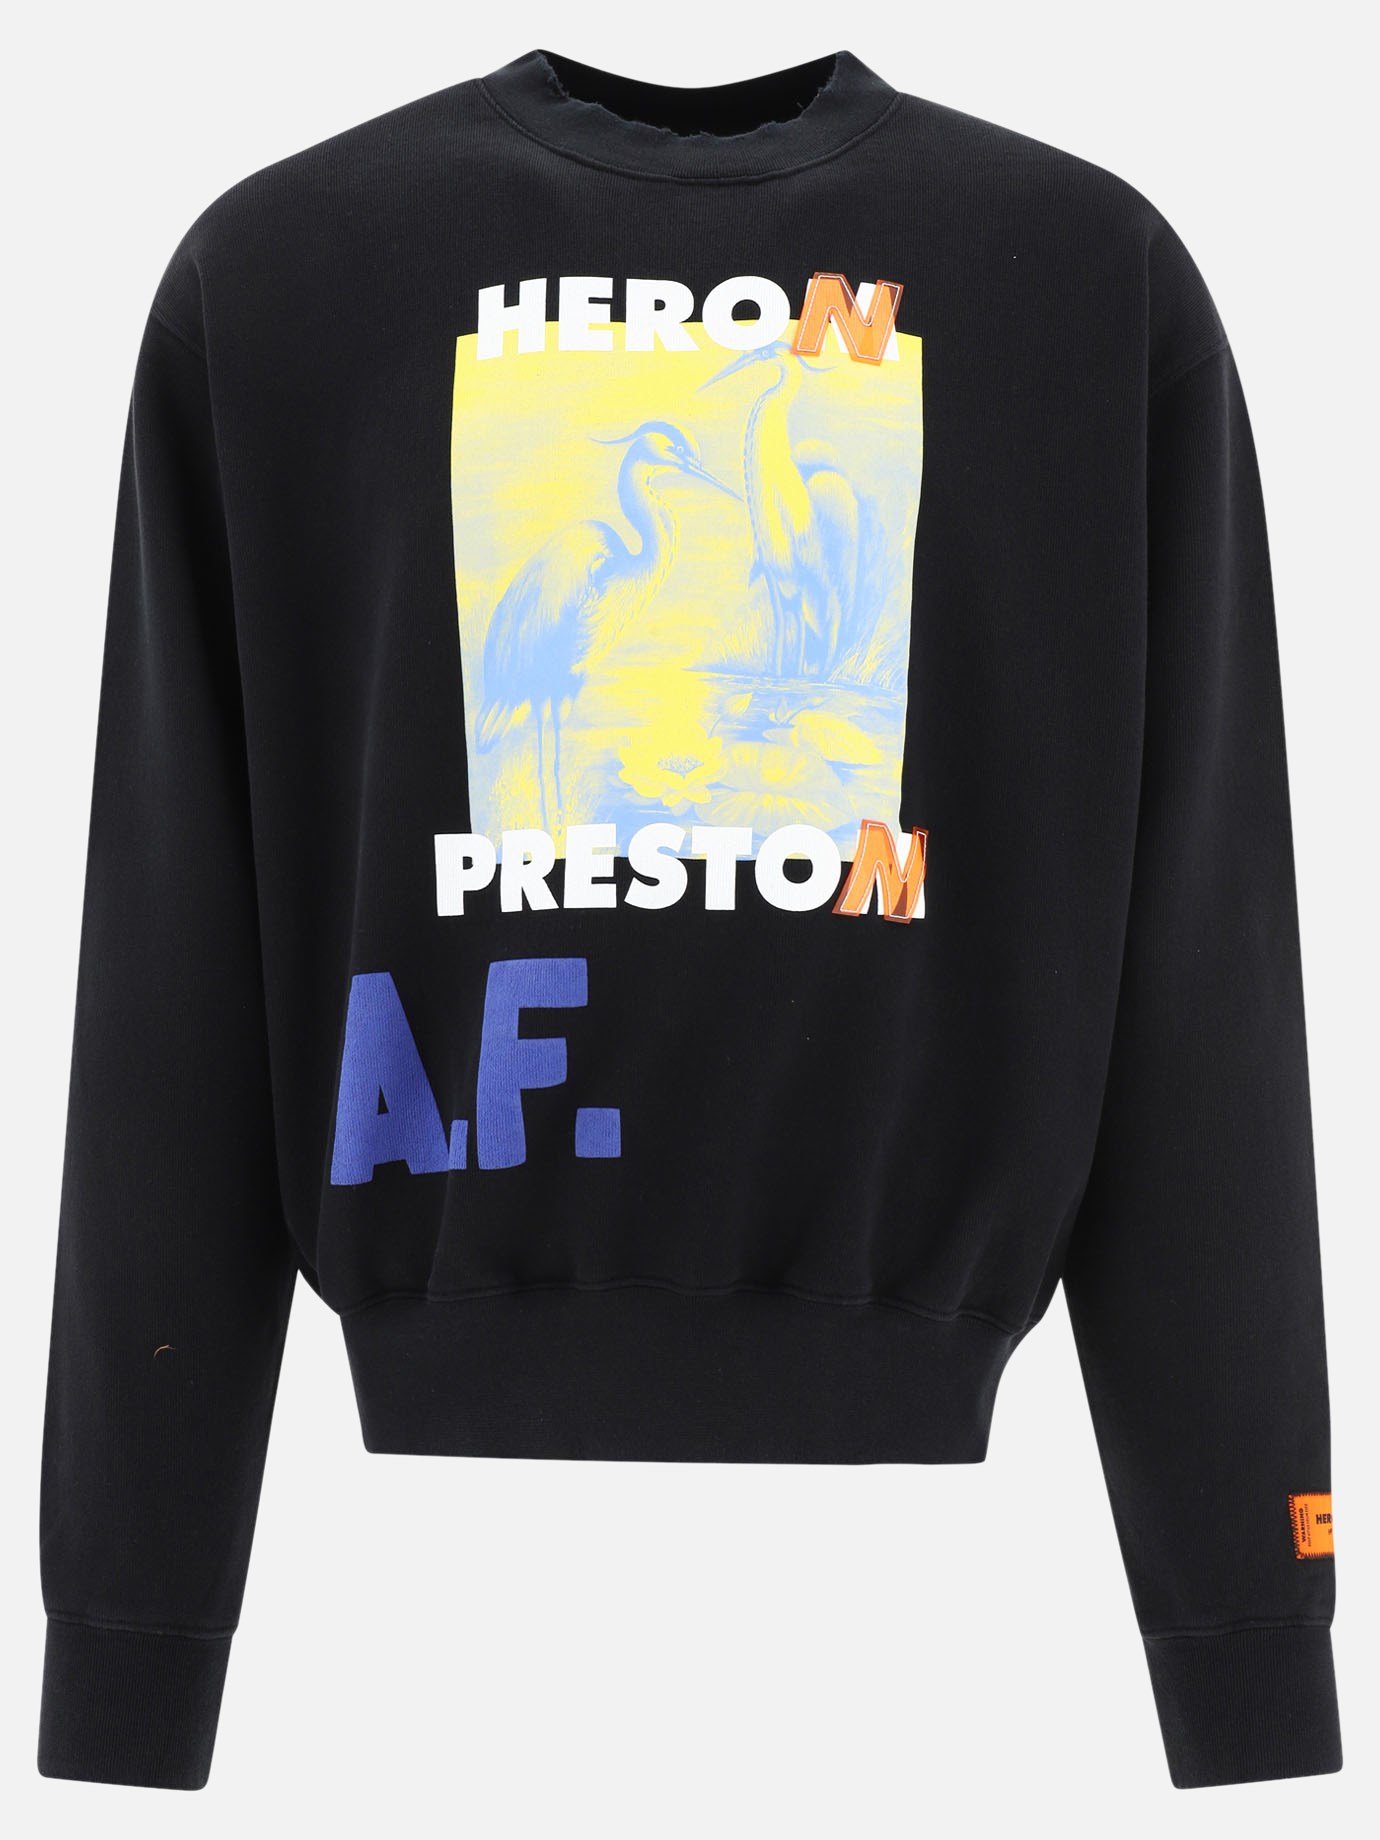  A.F. Authorize  sweatshirtby Heron Preston - 5